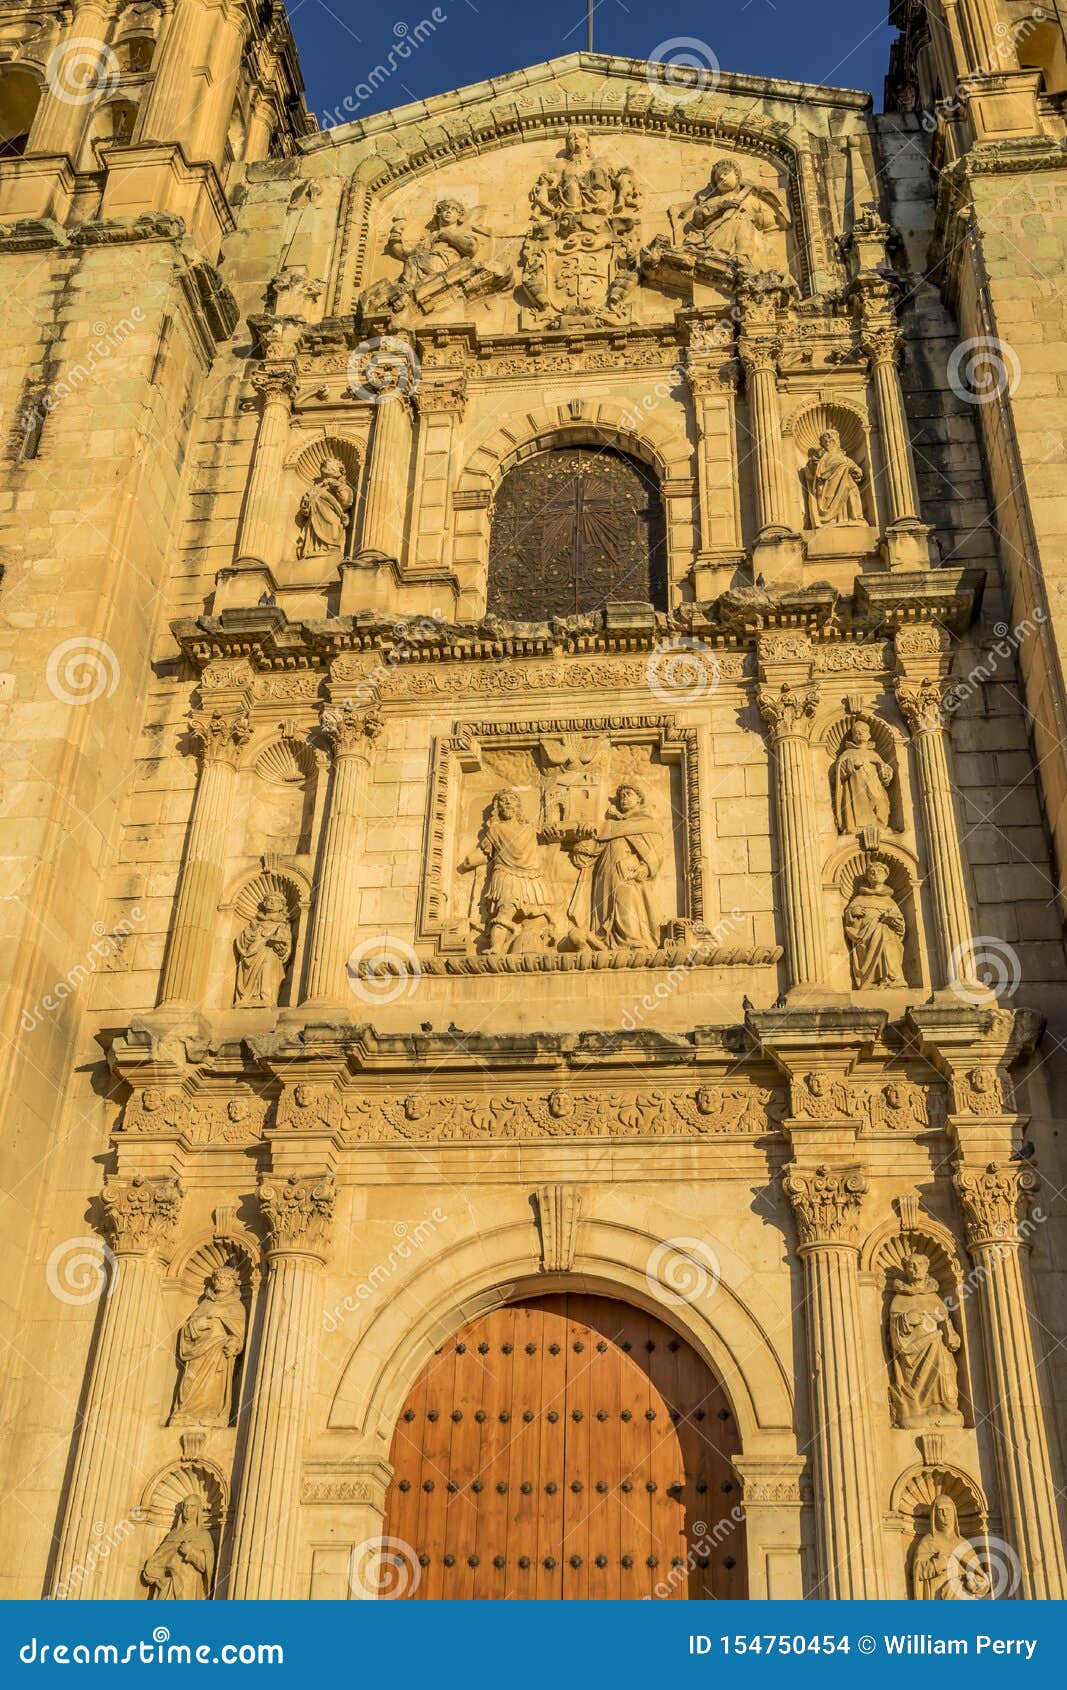 santo domingo de guzman facade church oaxaca mexico